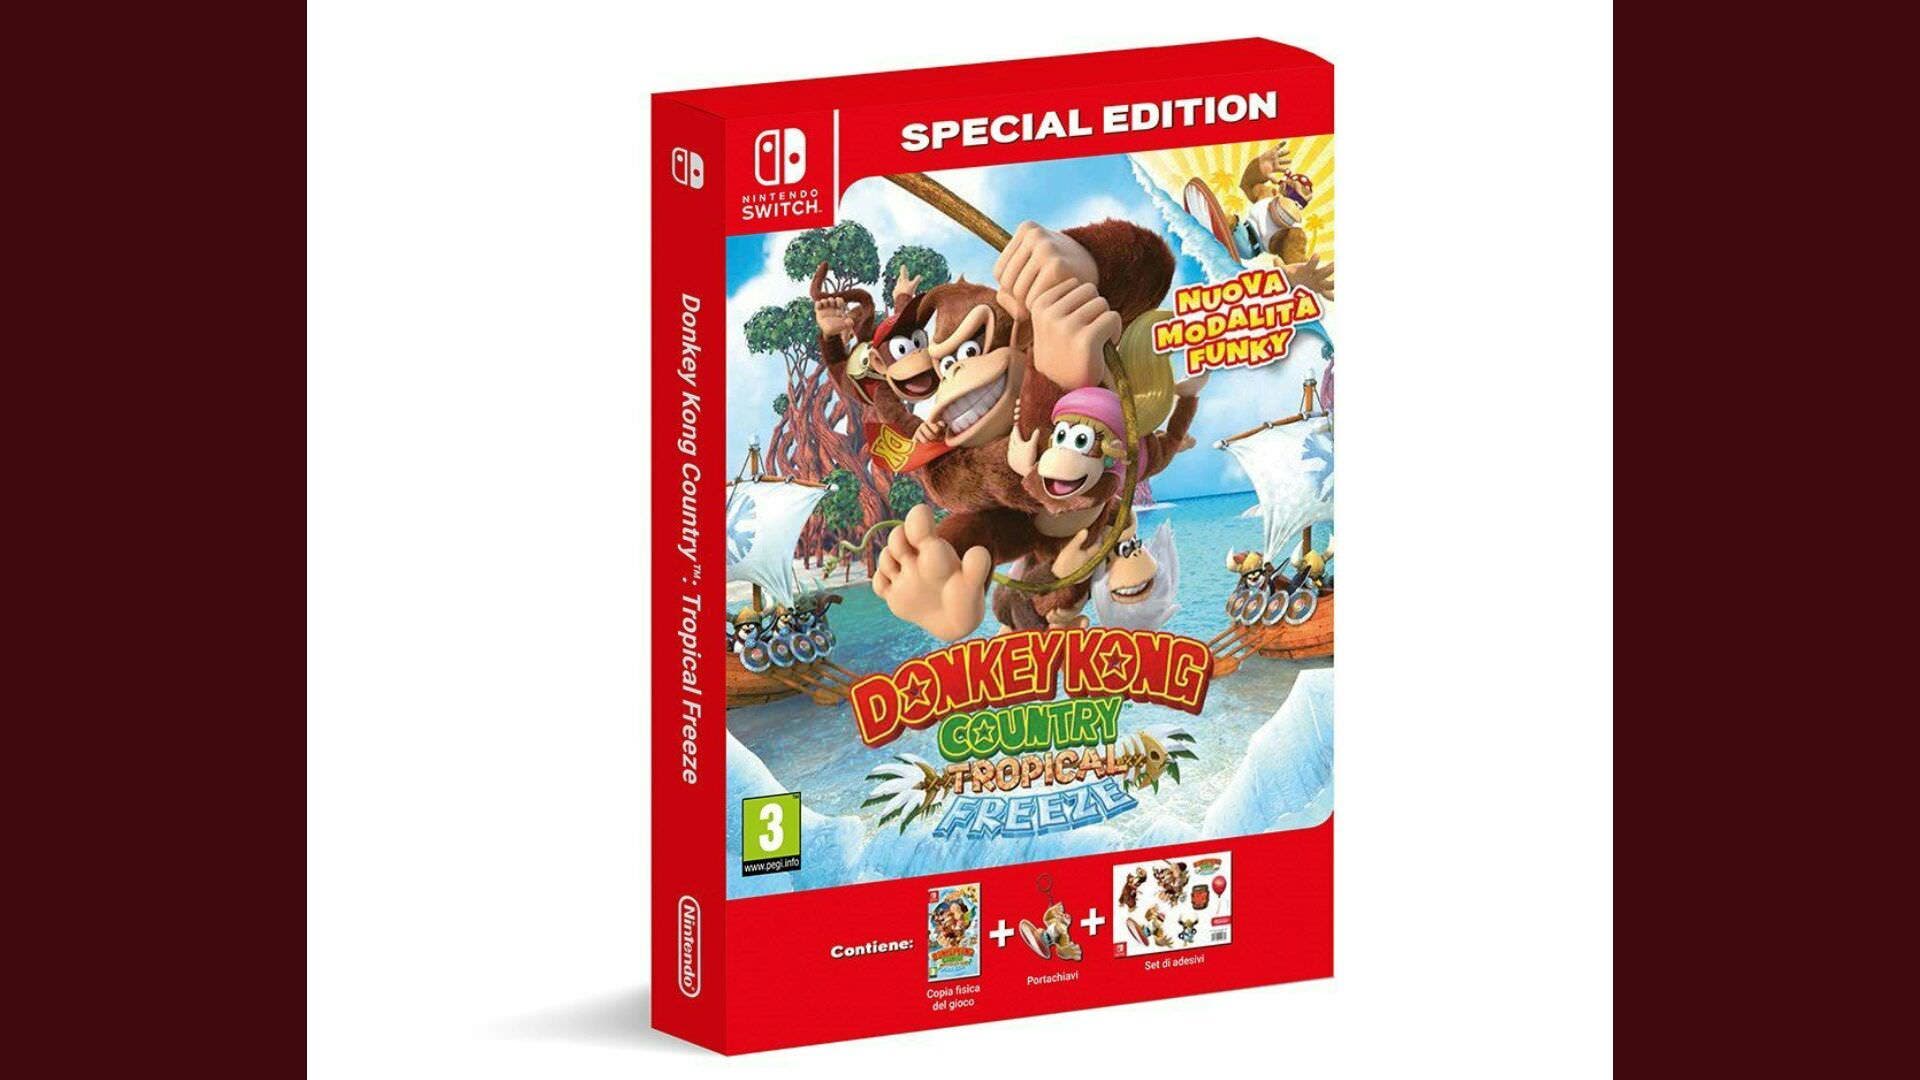 Amazon Italia lista una edición especial de Donkey Kong Country: Tropical Freeze para Nintendo Switch